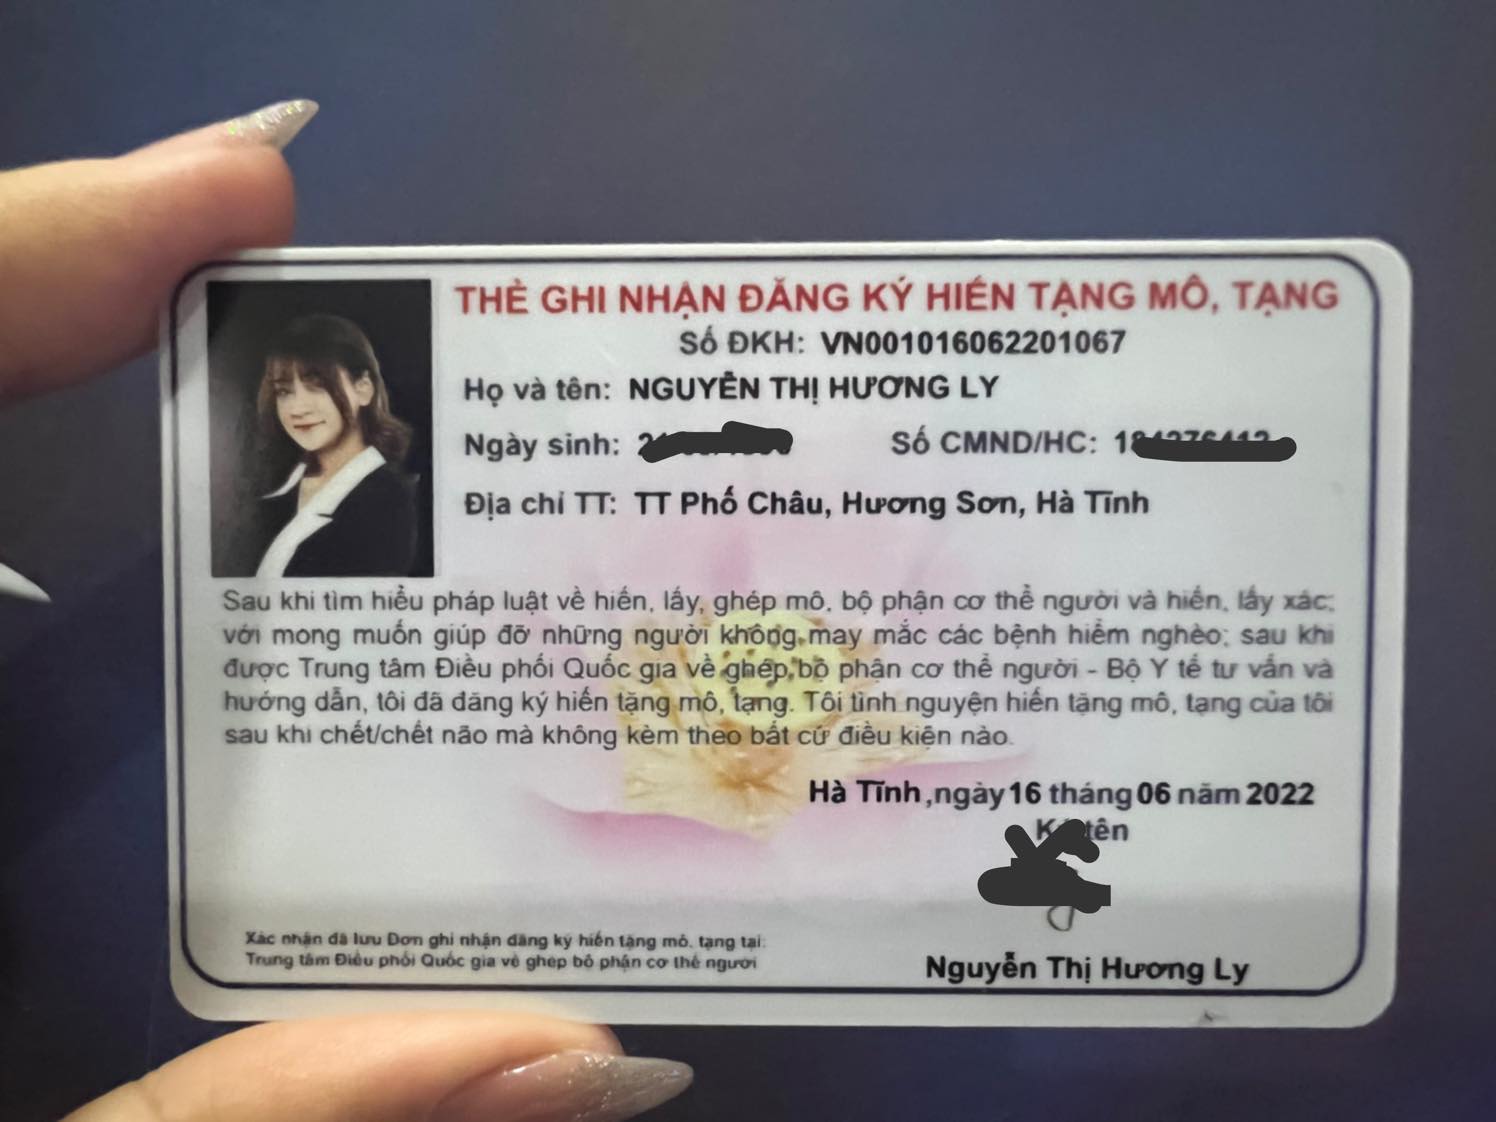 Câu chuyện từ thiện của những người nổi tiếng làng game Việt, riêng Độ Mixi chọn cách đặc biệt - Ảnh 1.